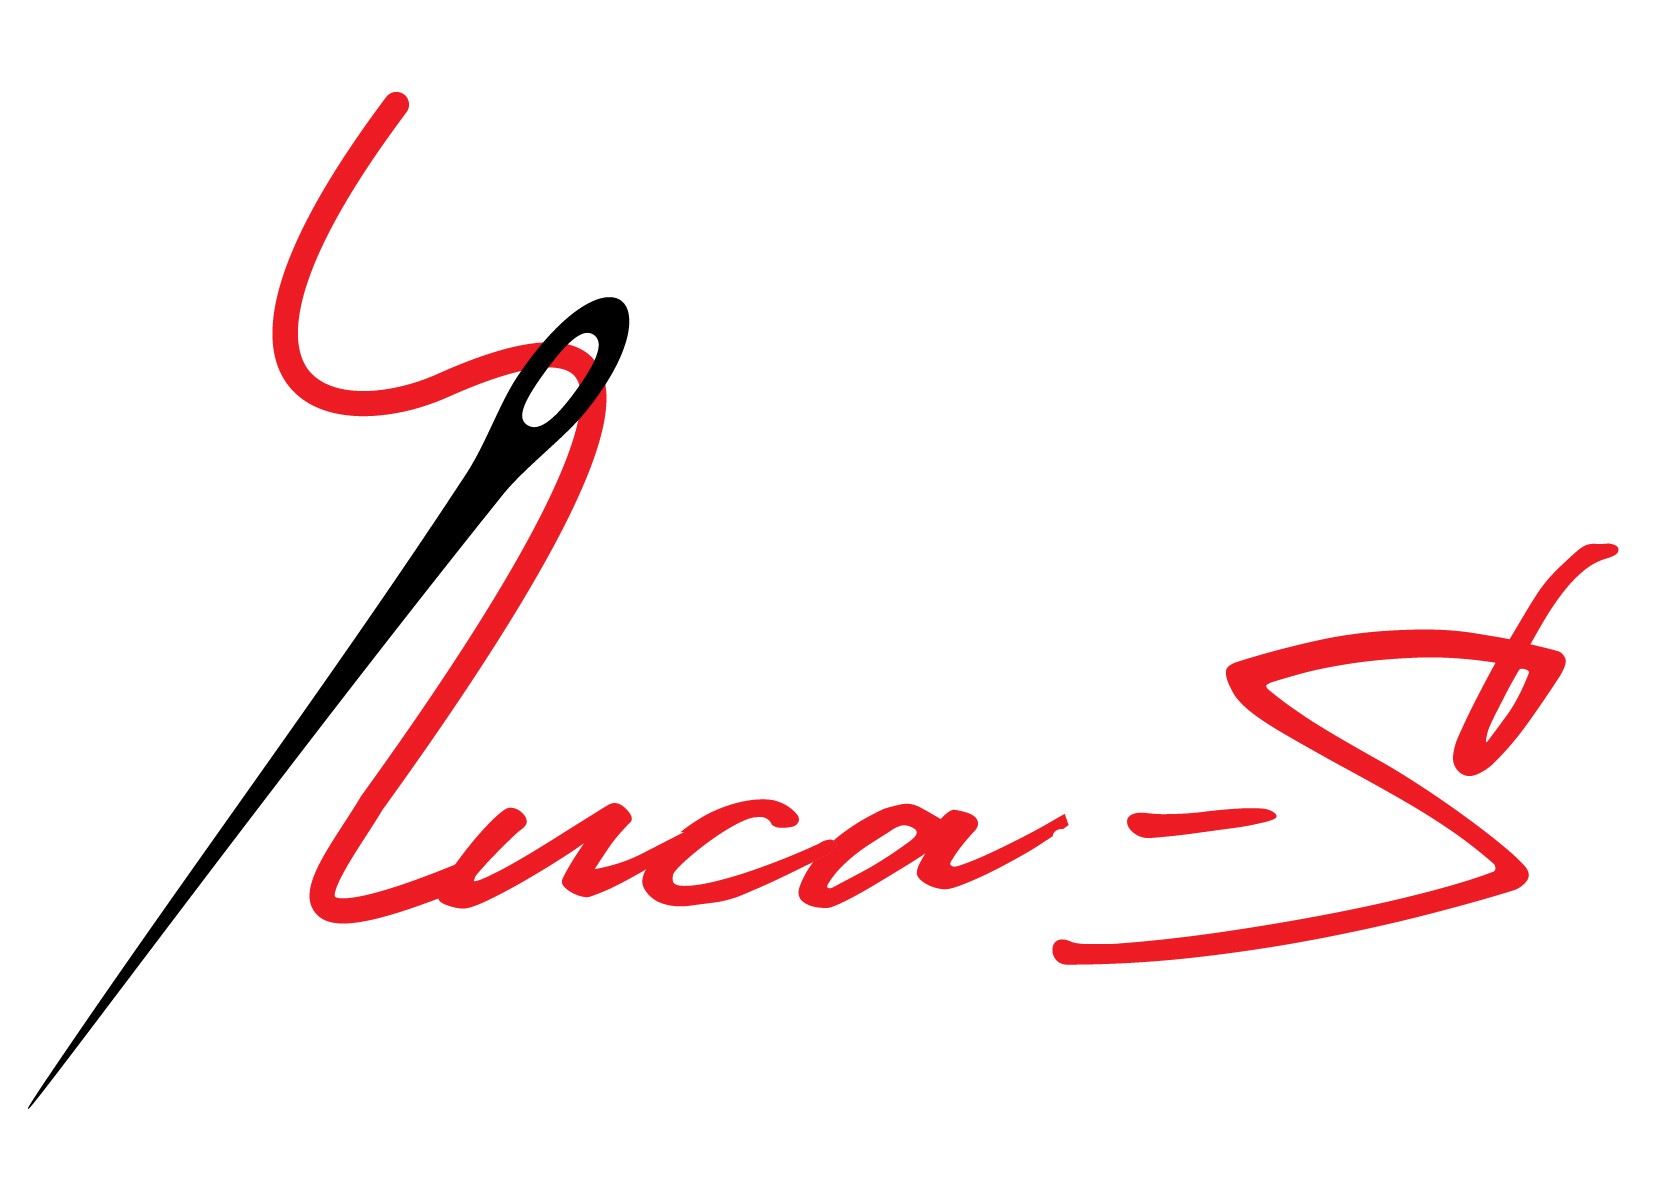 Luca-S